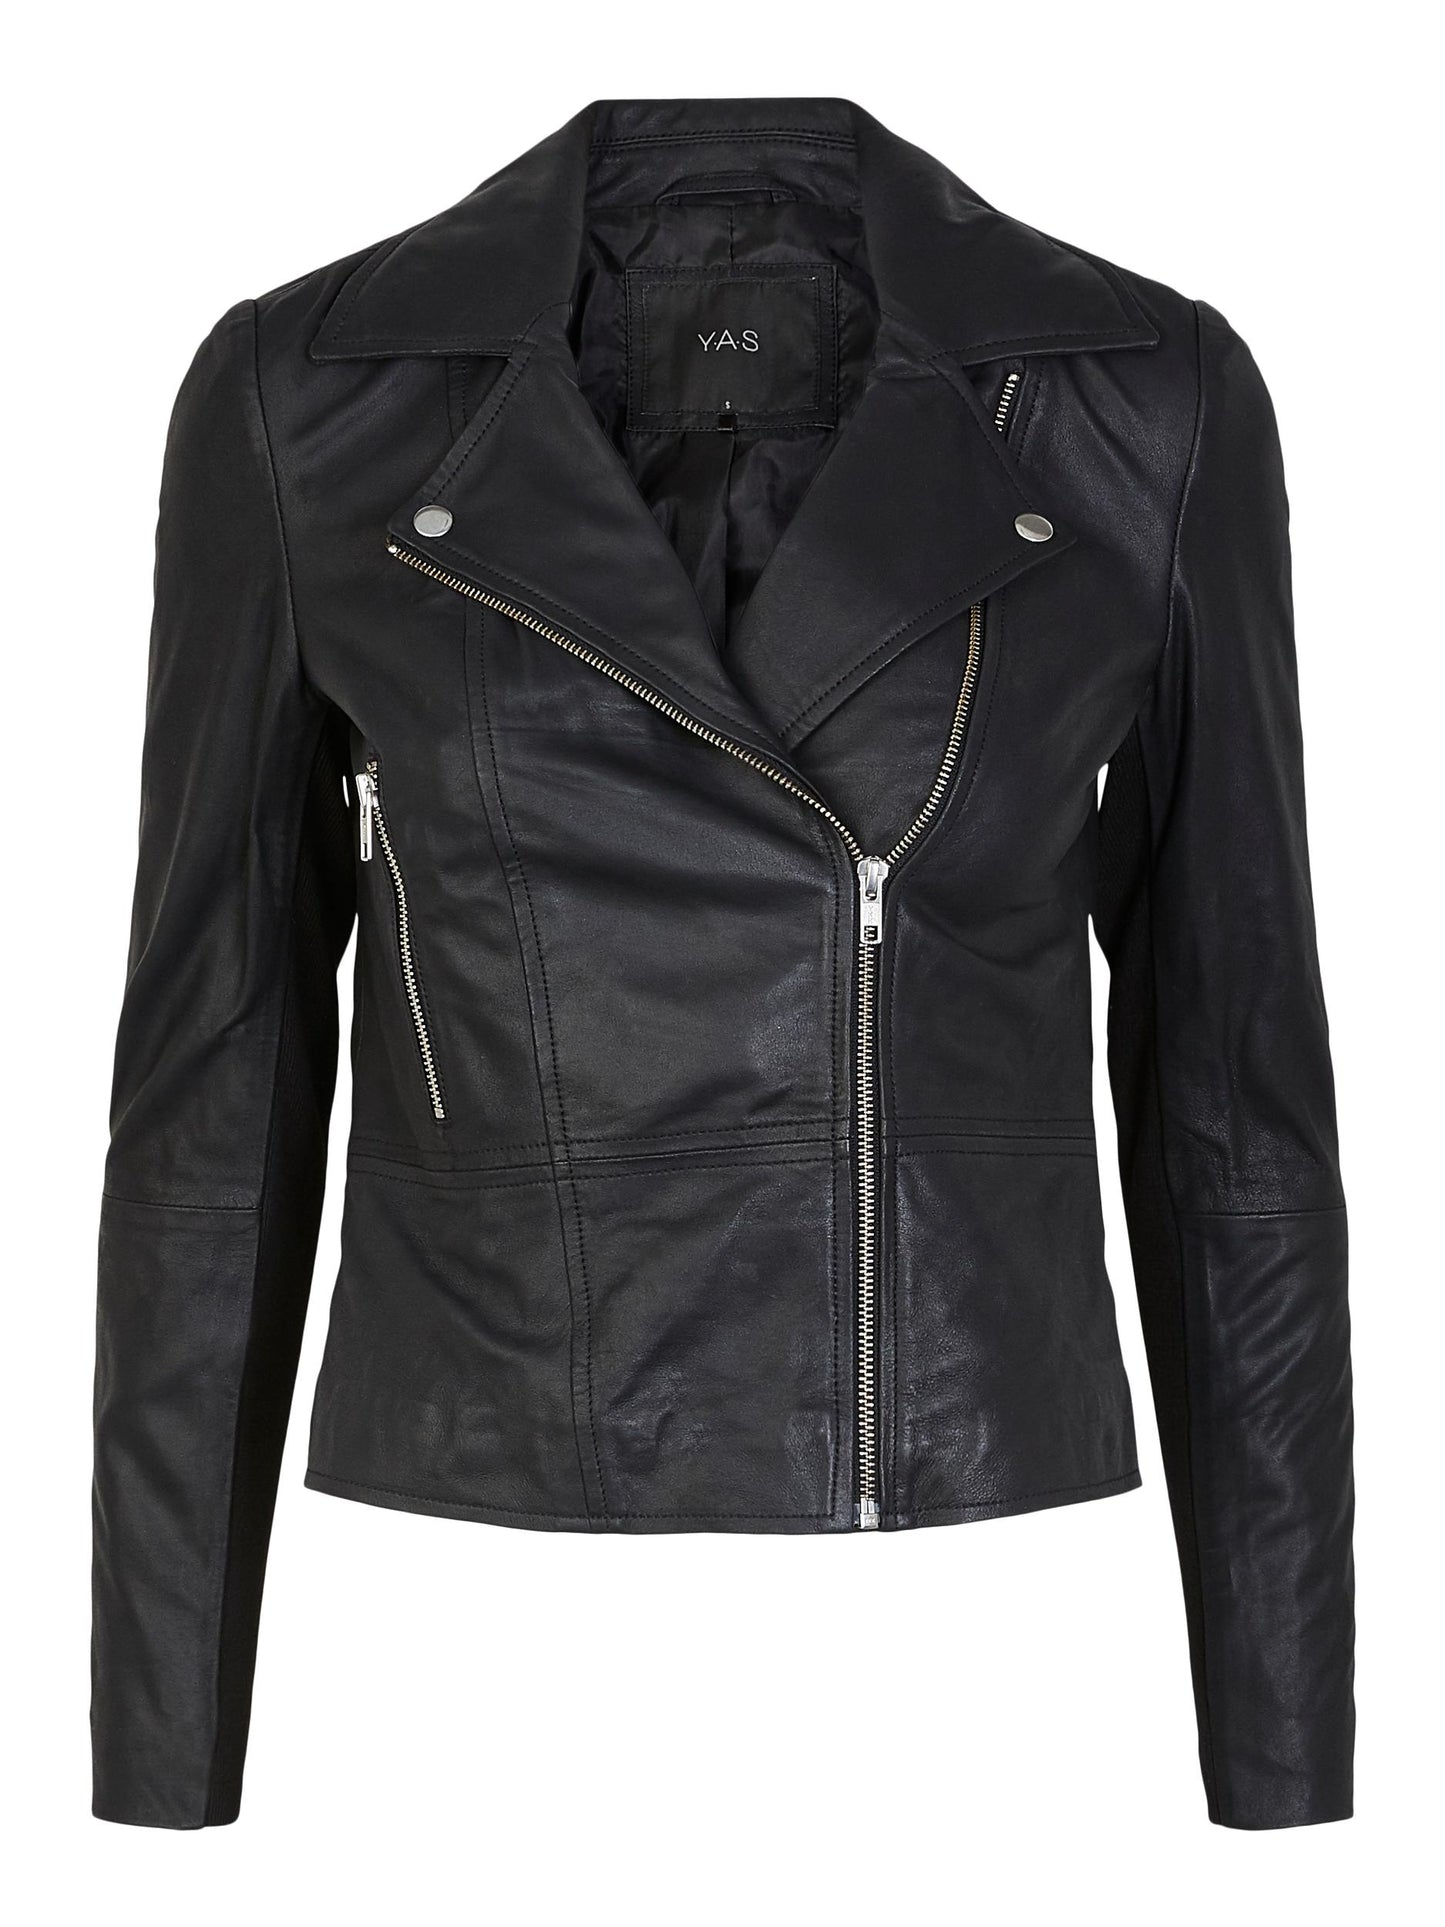 YAS Sophie Leather Jacket